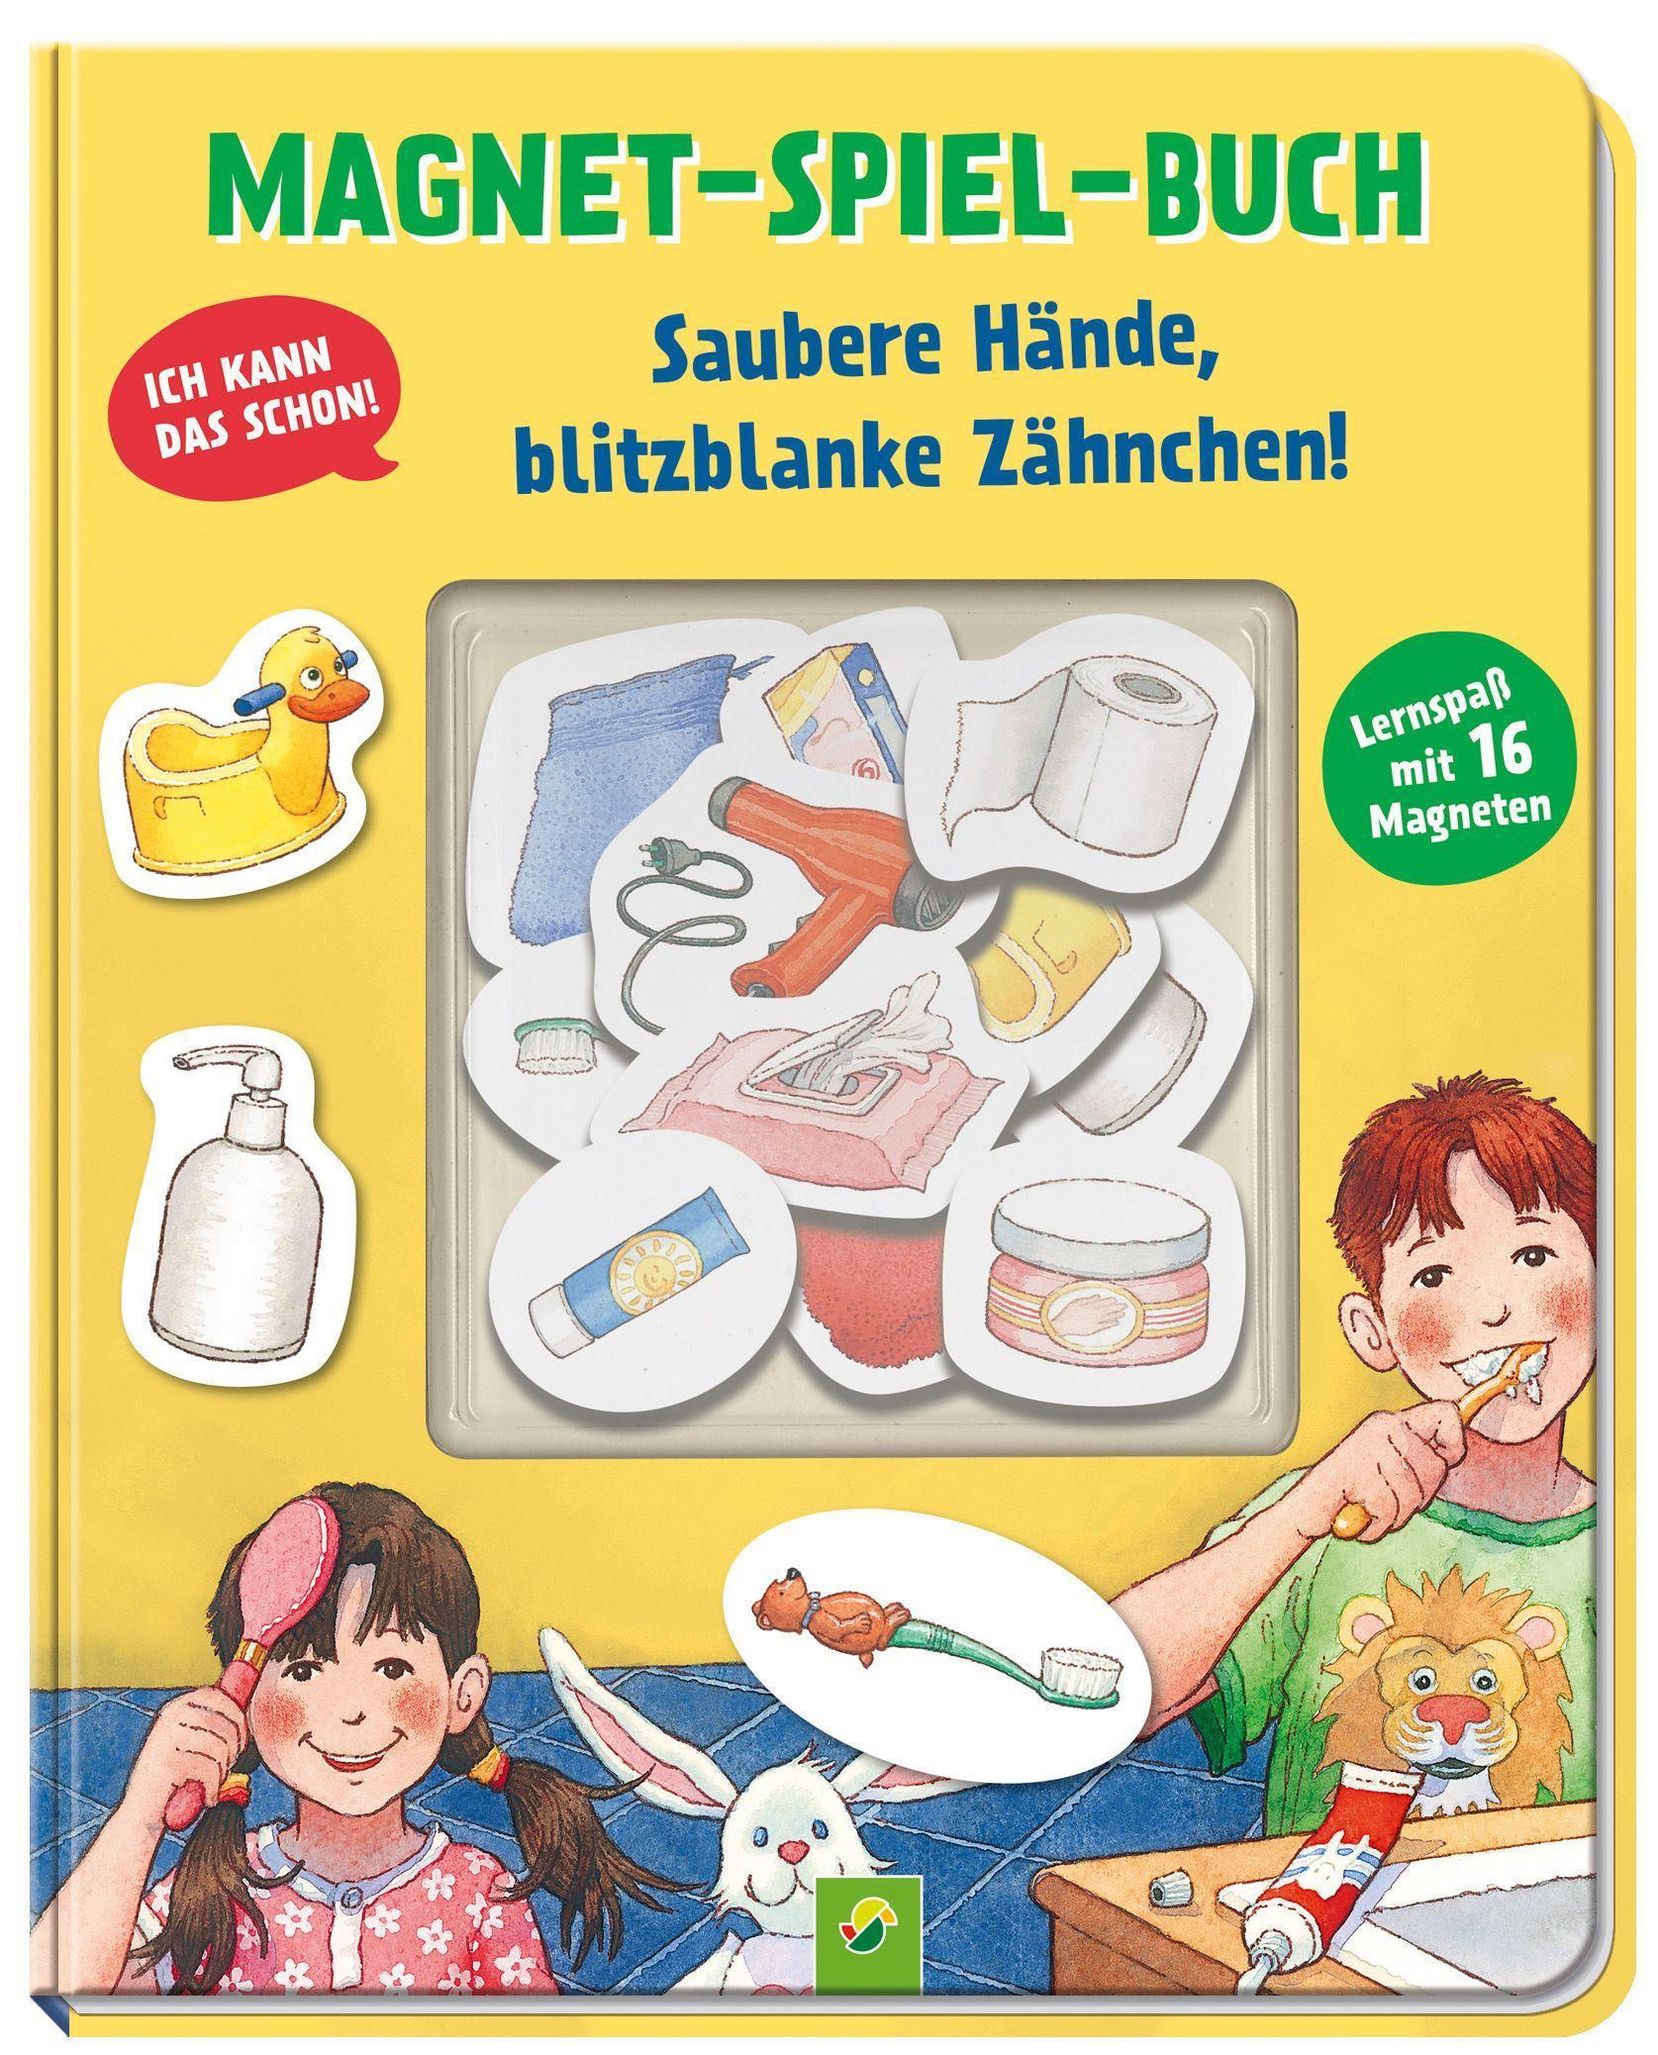 Magnet-Spiel-Buch Saubere Hände, blitzblanke Zähnchen! Buch jetzt online  bei Weltbild.ch bestellen